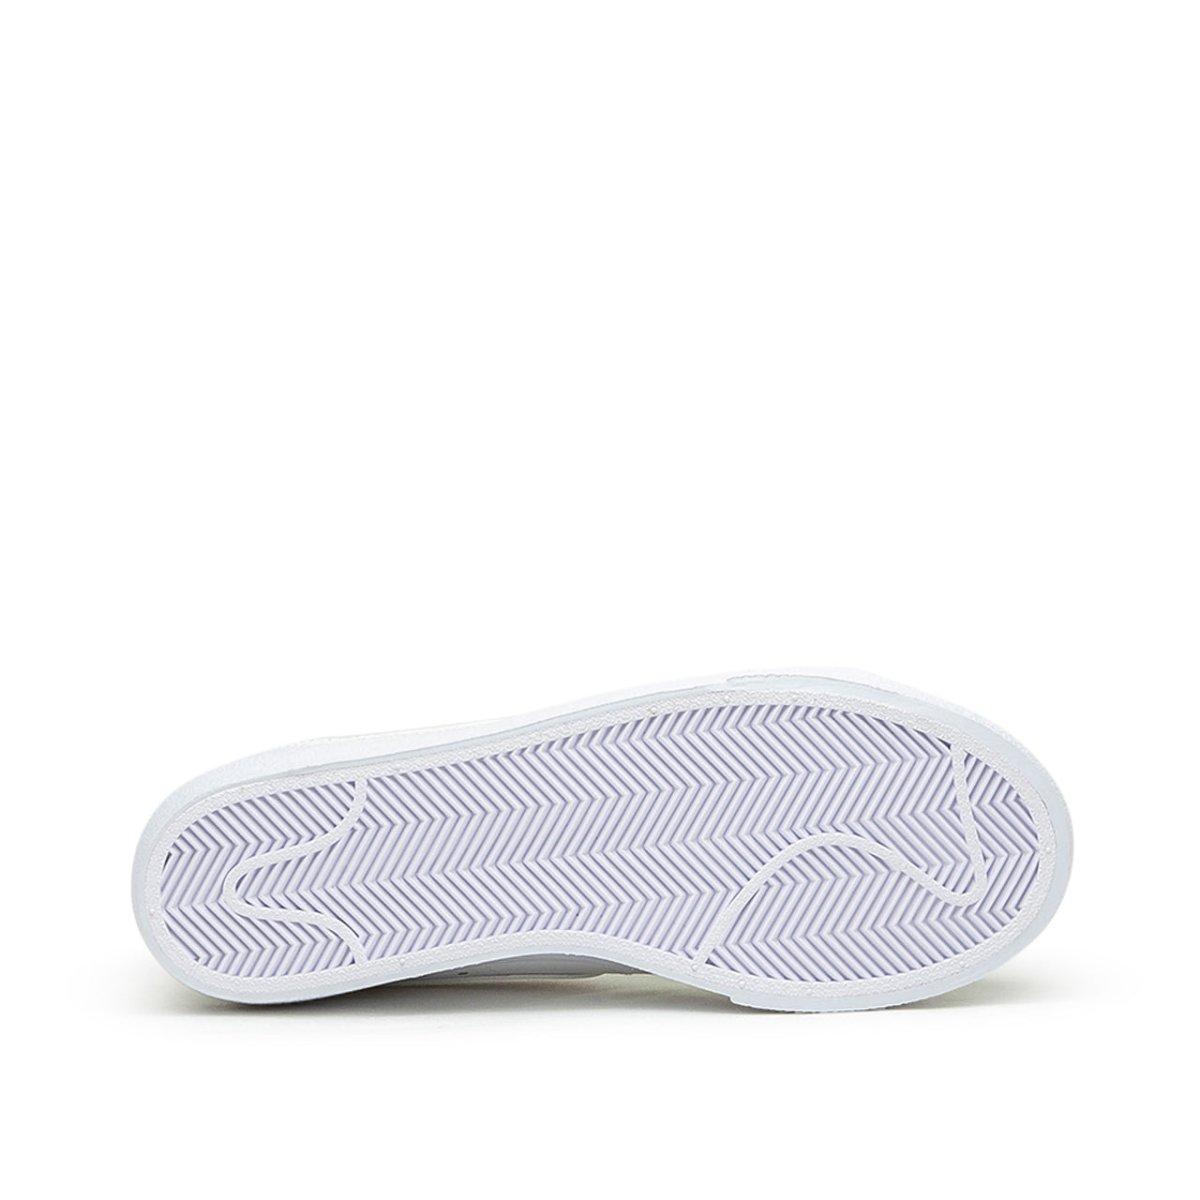 Nike Blazer Low Platform (Weiss)  - Allike Store